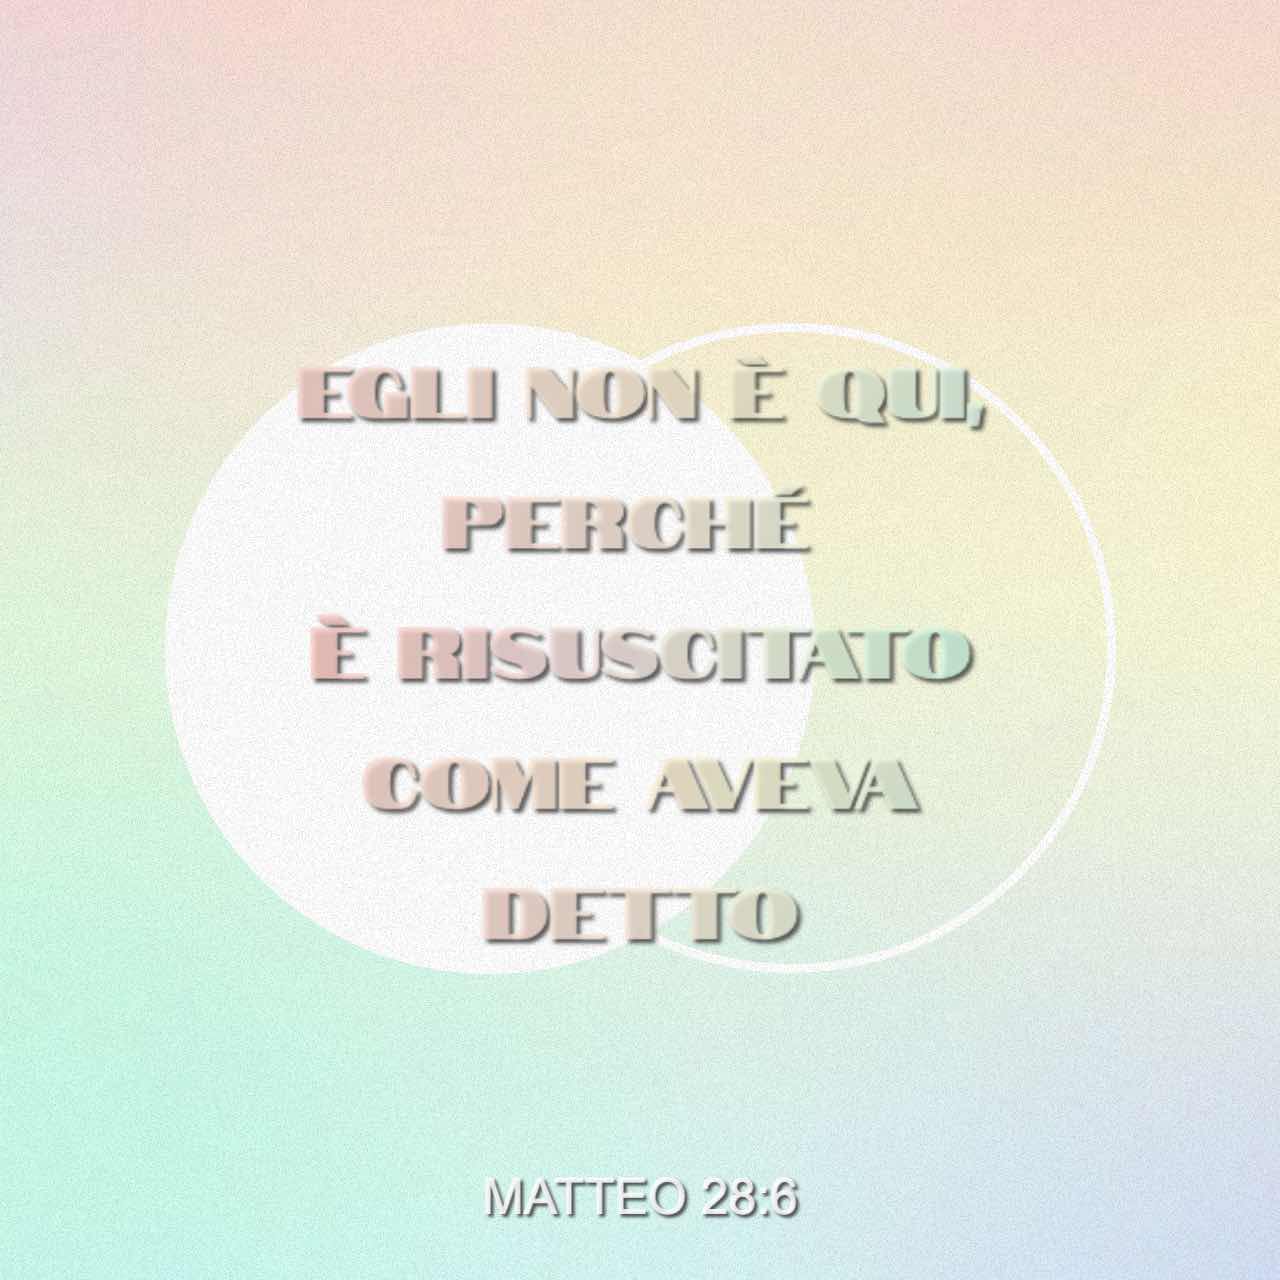 Egli è risuscitato - Matteo 28:6 - Immagine del Versetto